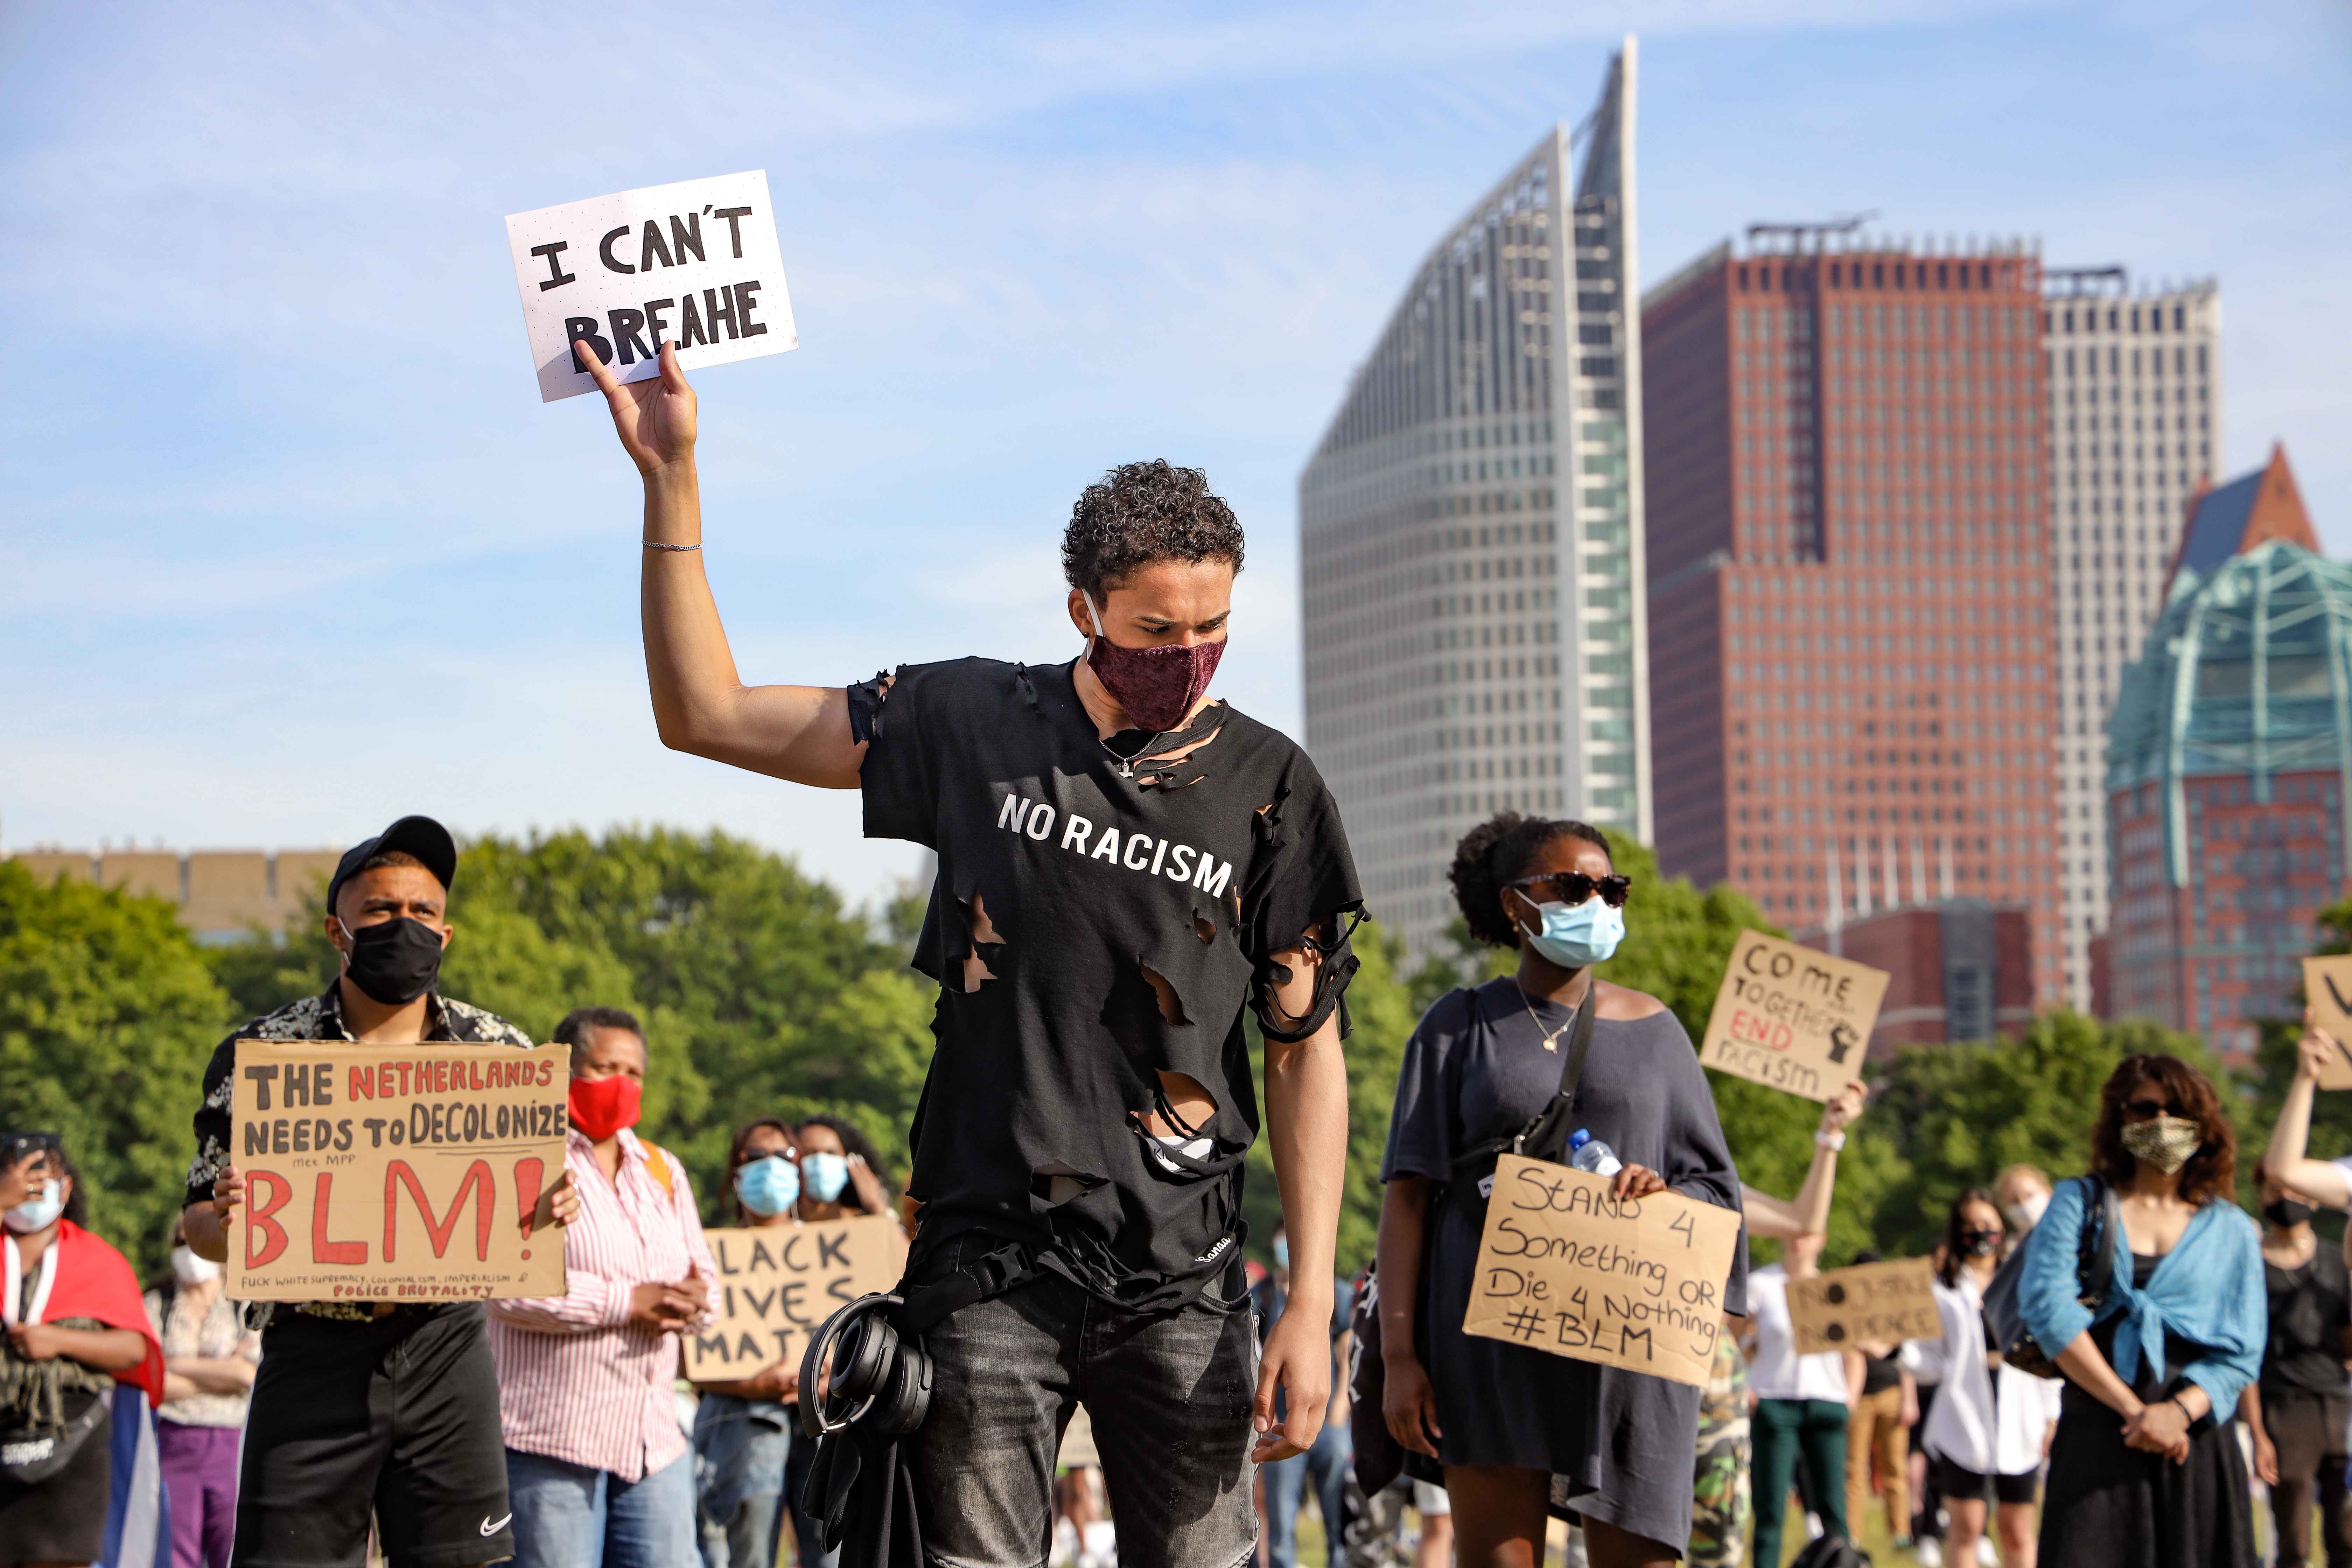 Black Lives Matter demonstratie tijdens Corona pandemie 2020, fotograaf Sandra Uittenbogaart